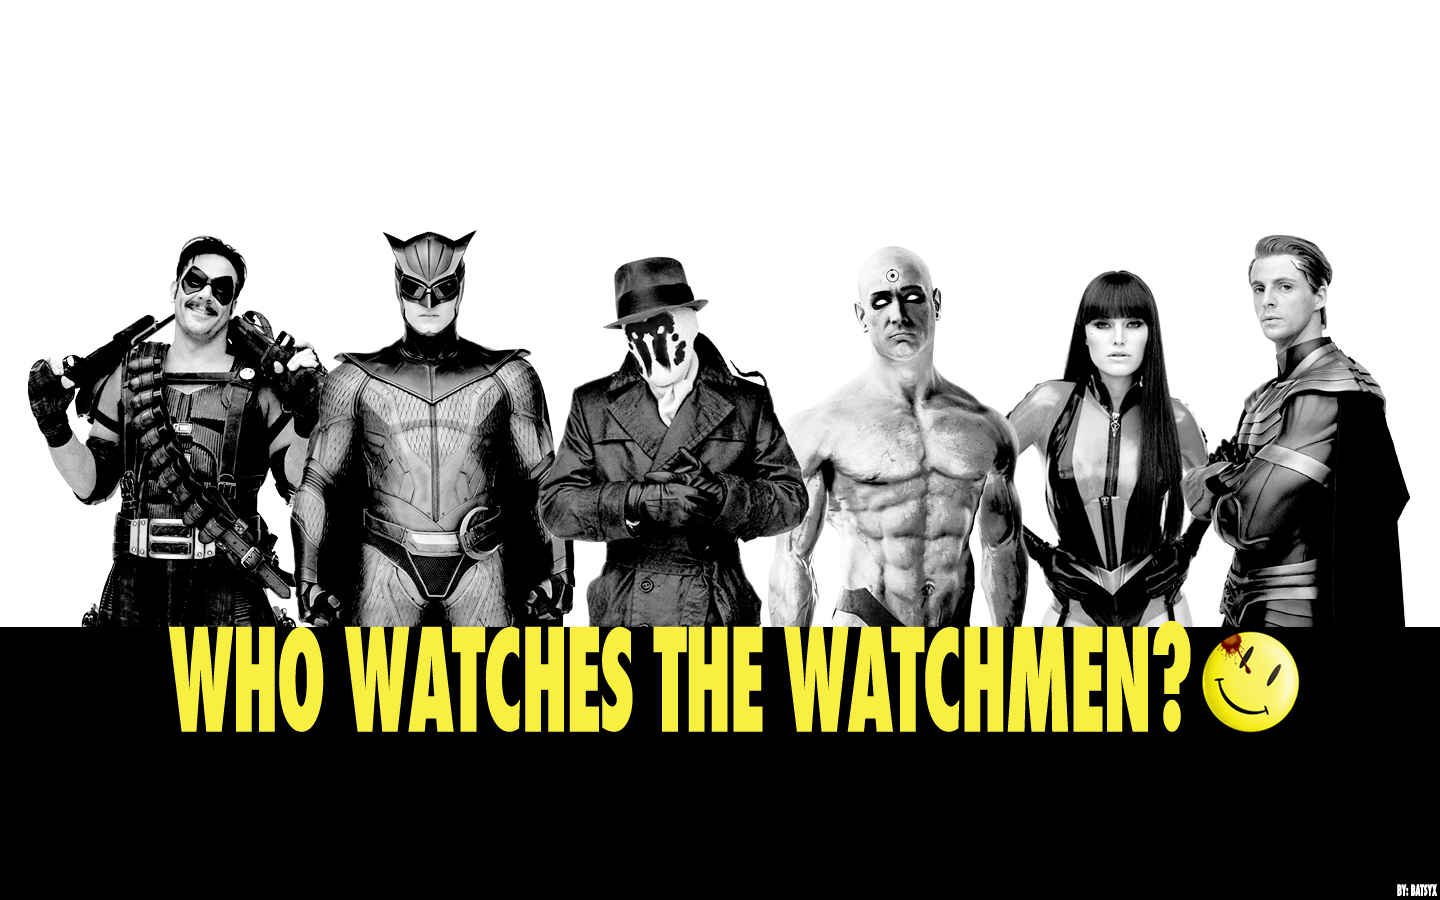 Who-Watches-the-Watchmen-watchmen-14960175-1440-900.jpg